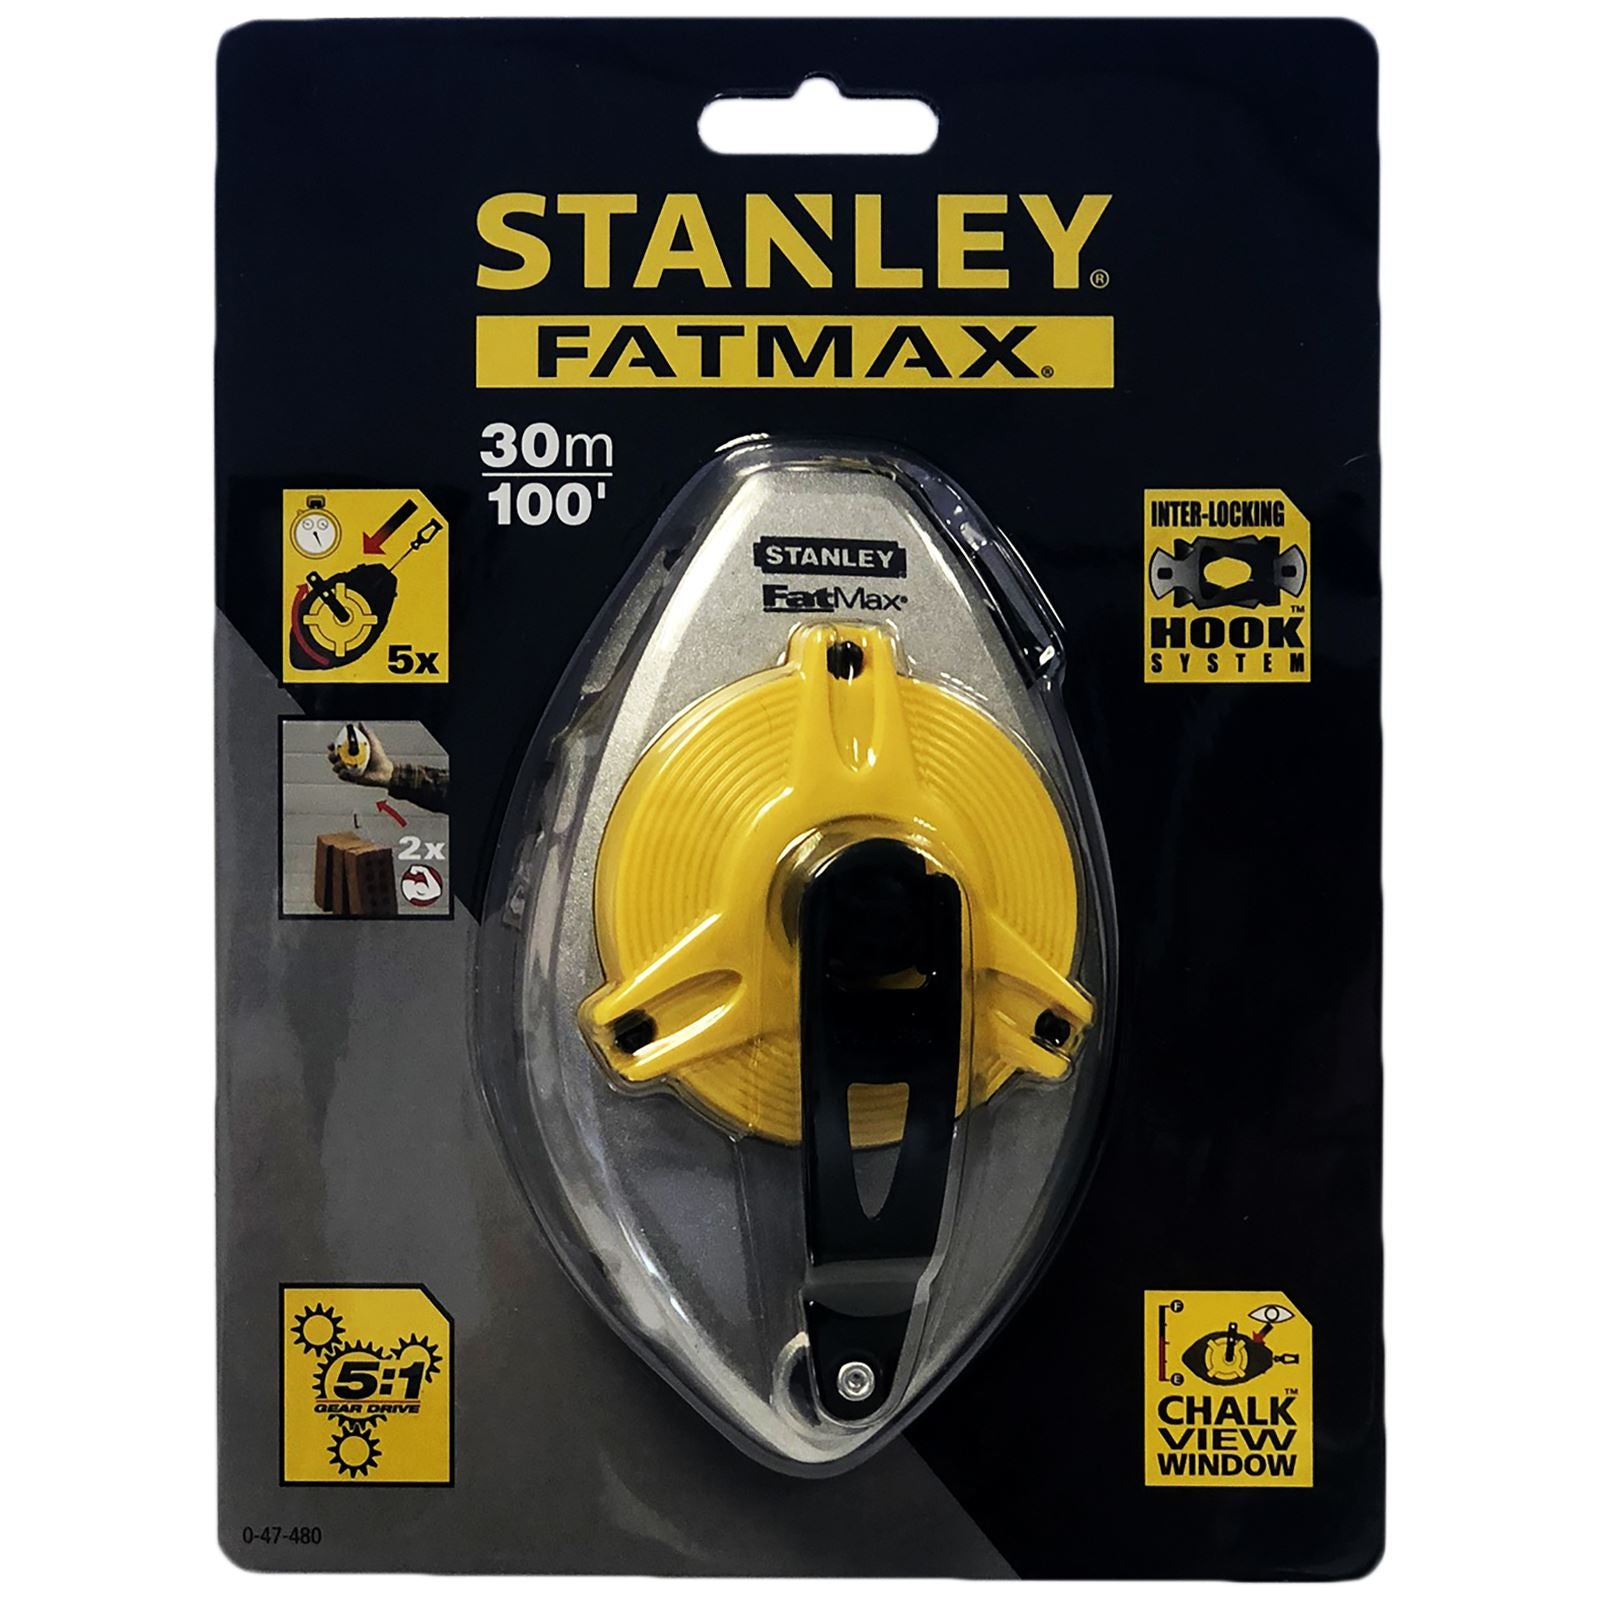 Stanley FatMax 30m/100ft Chalk Line 5:1 Gear Drive